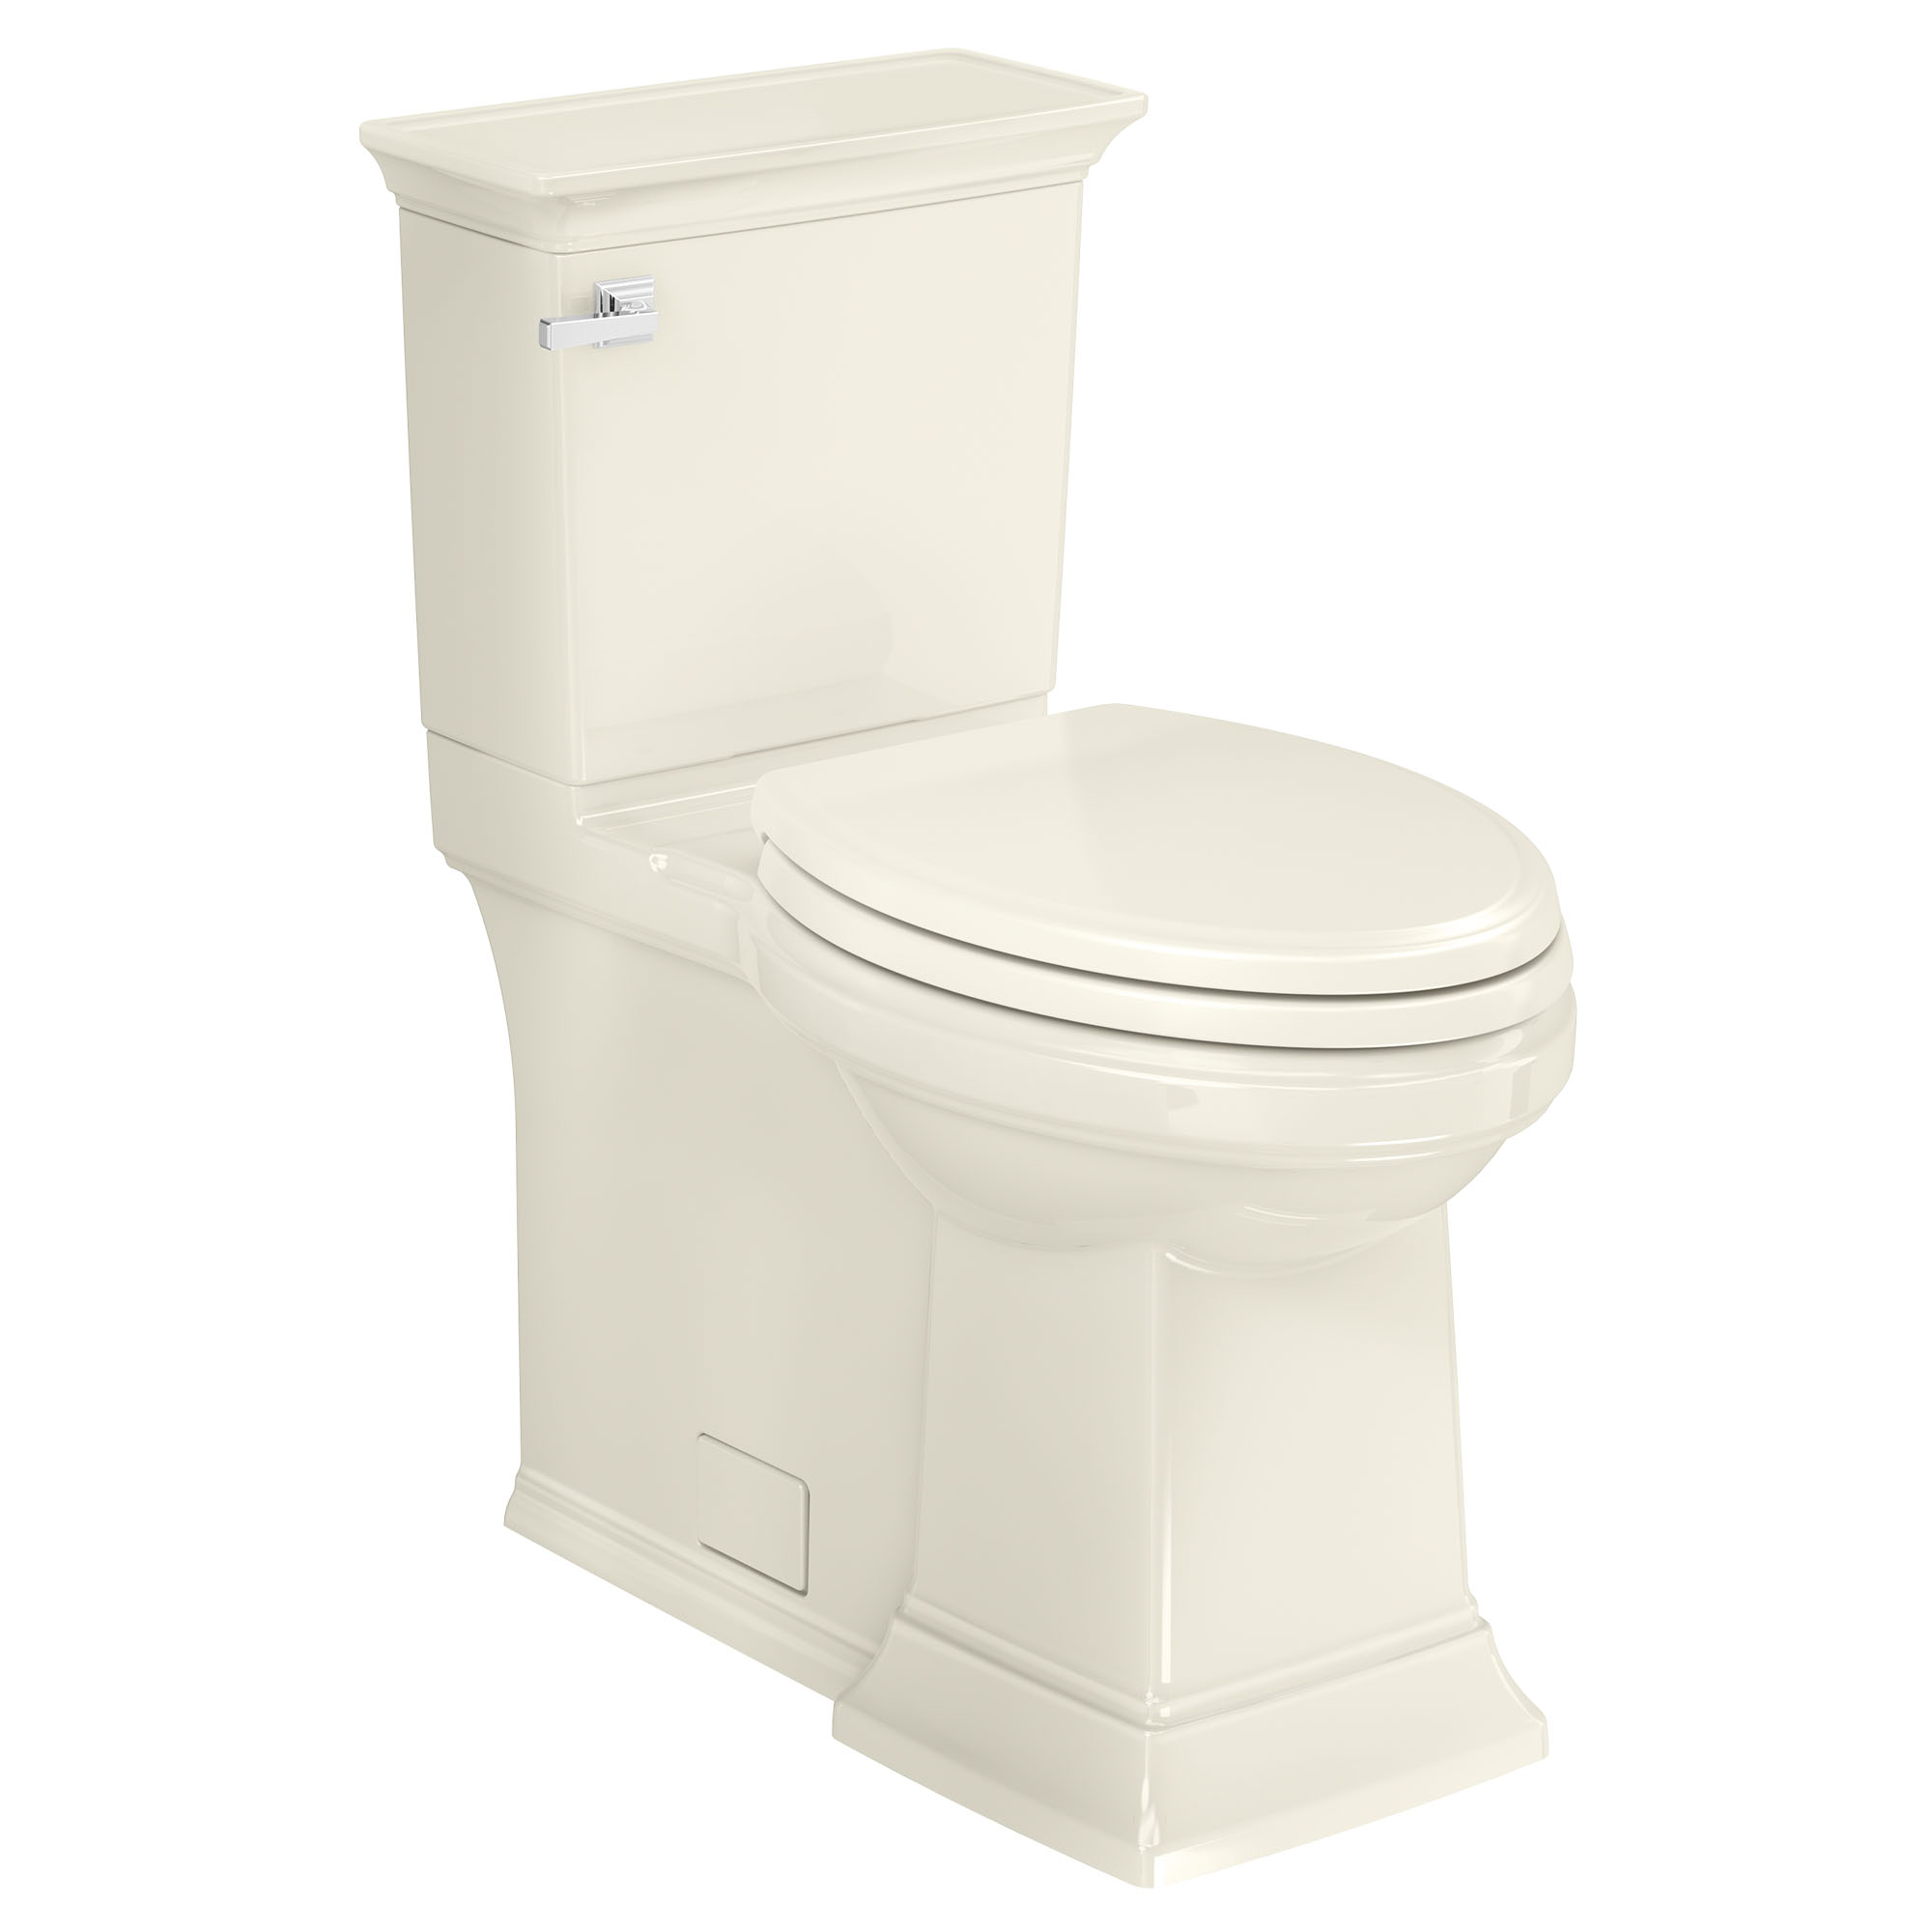 Toilette Town Square S à jupe, 2 pièces, 1,28 gpc/4,8 lpc, à cuvette allongée à hauteur de chaise avec siège